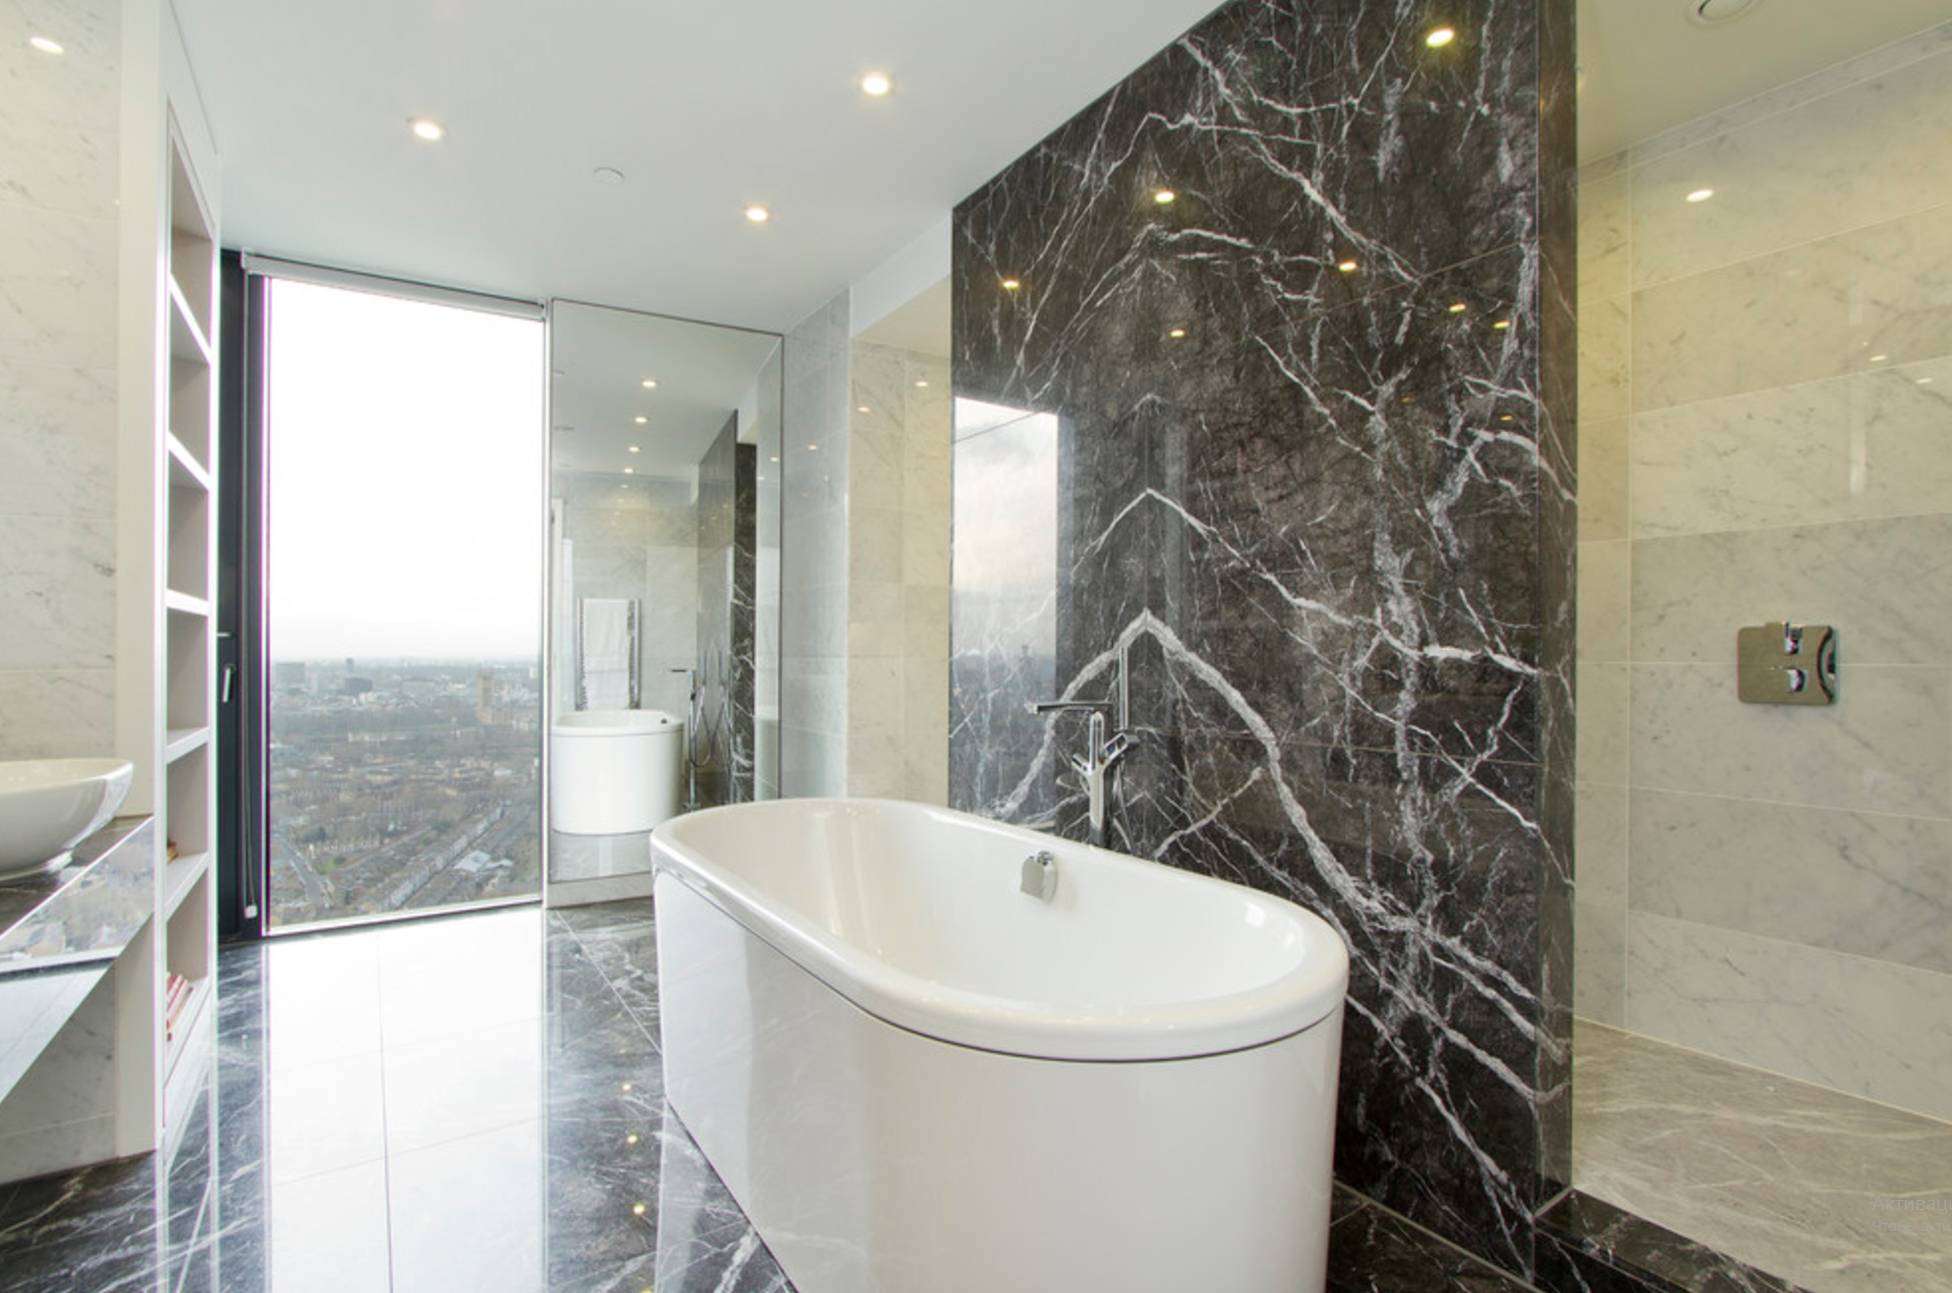 Ванная комната под мрамор, дизайн-фото инерьеров отделки